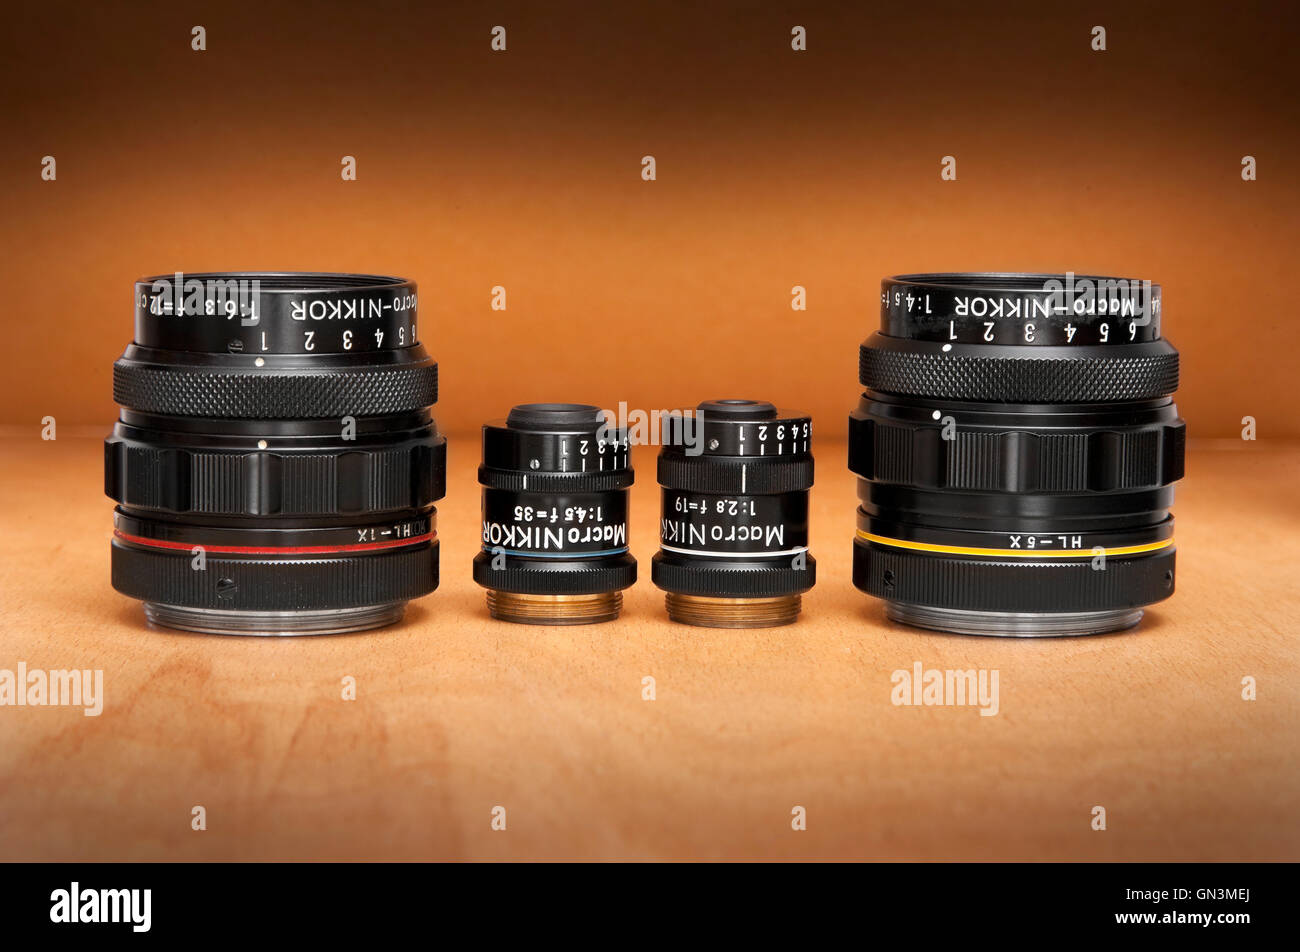 Nikon Multiphot Makro objetivos Nikkor de alta calidad especializada, lentes macro, parte del sistema Multiphot científico Foto de stock